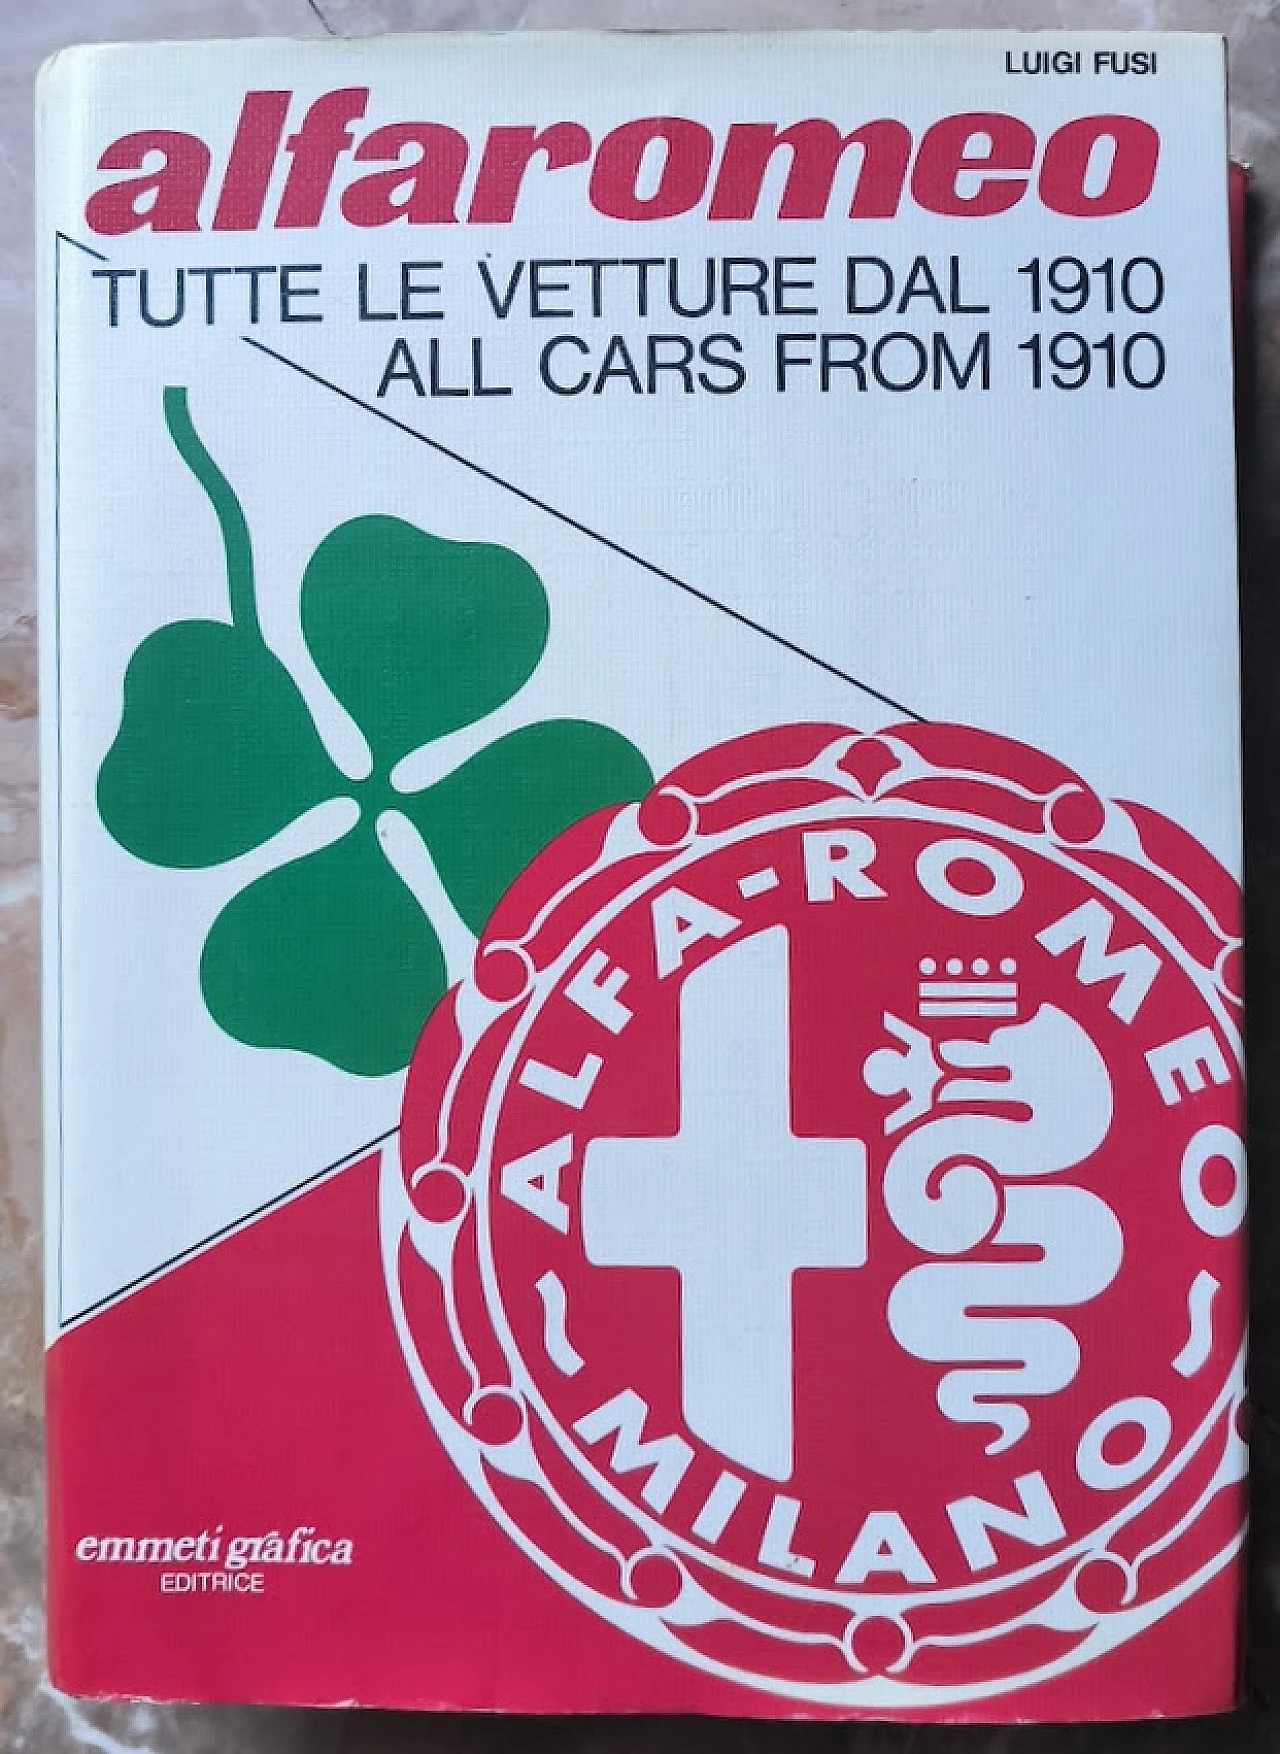 Alfaromeo - Tutte le vetture dal 1910 book by Luigi Fusi, 1978 3